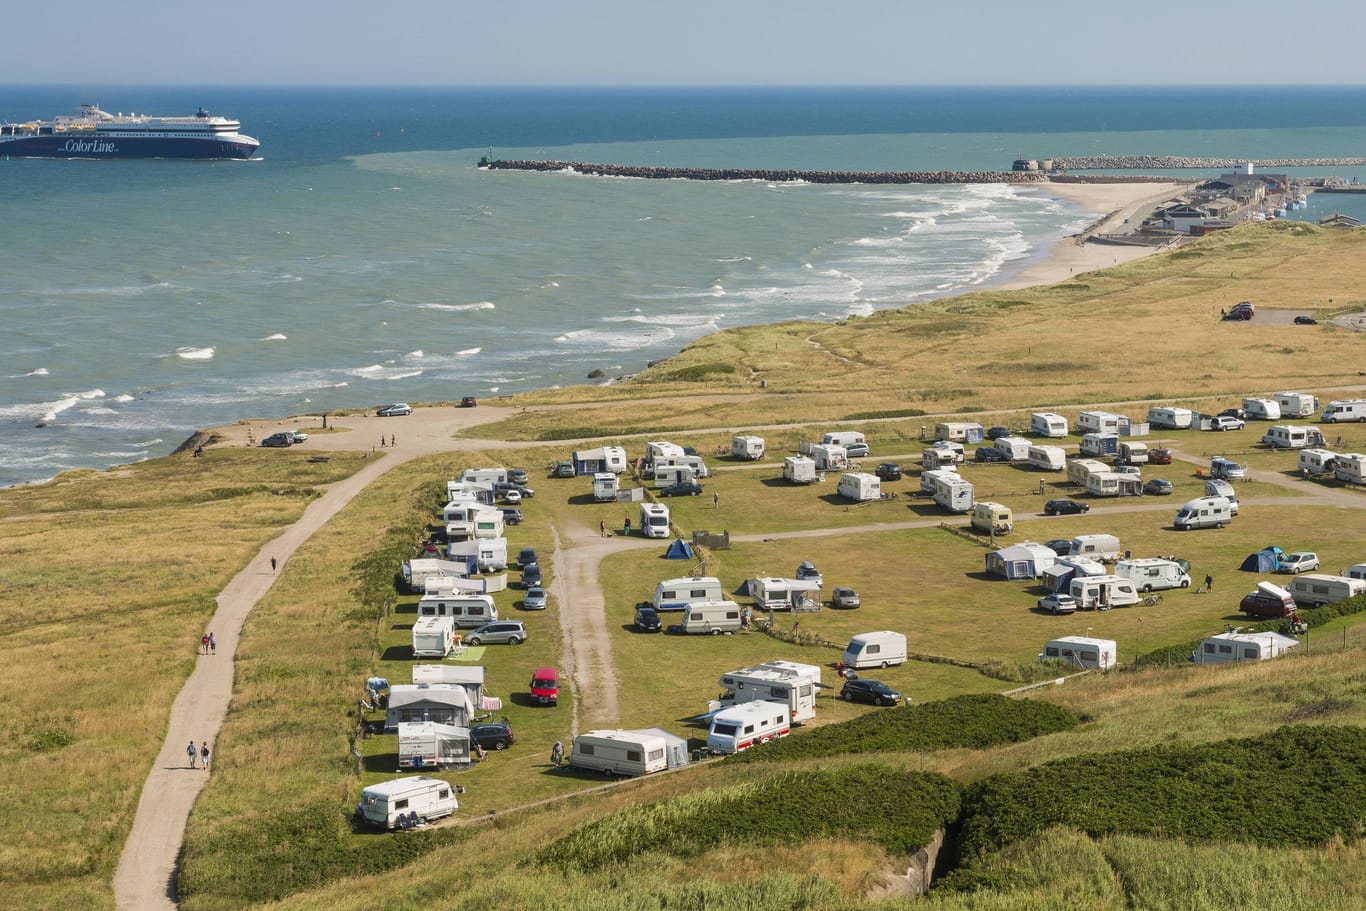 Camping an der Küste: In vielen Ländern wie etwa Dänemark ist der Urlaub mit Wohnmobil, Caravan und Zelt auf einem Campingplatz teurer geworden.